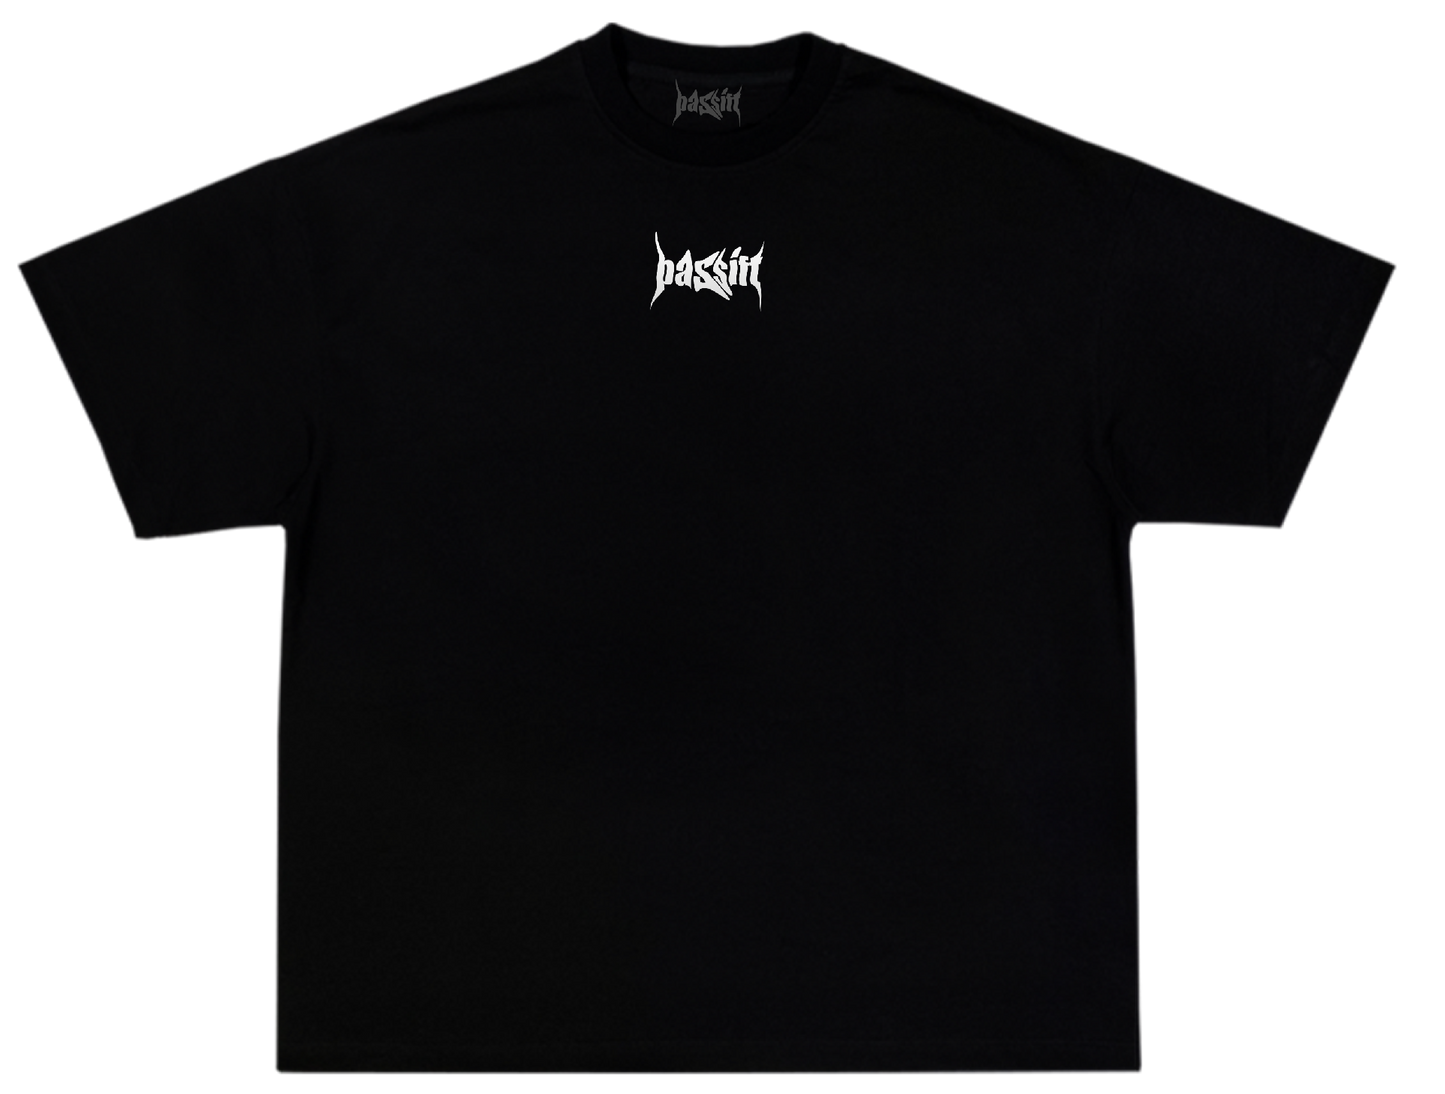 Inner Peace Black T-shirt